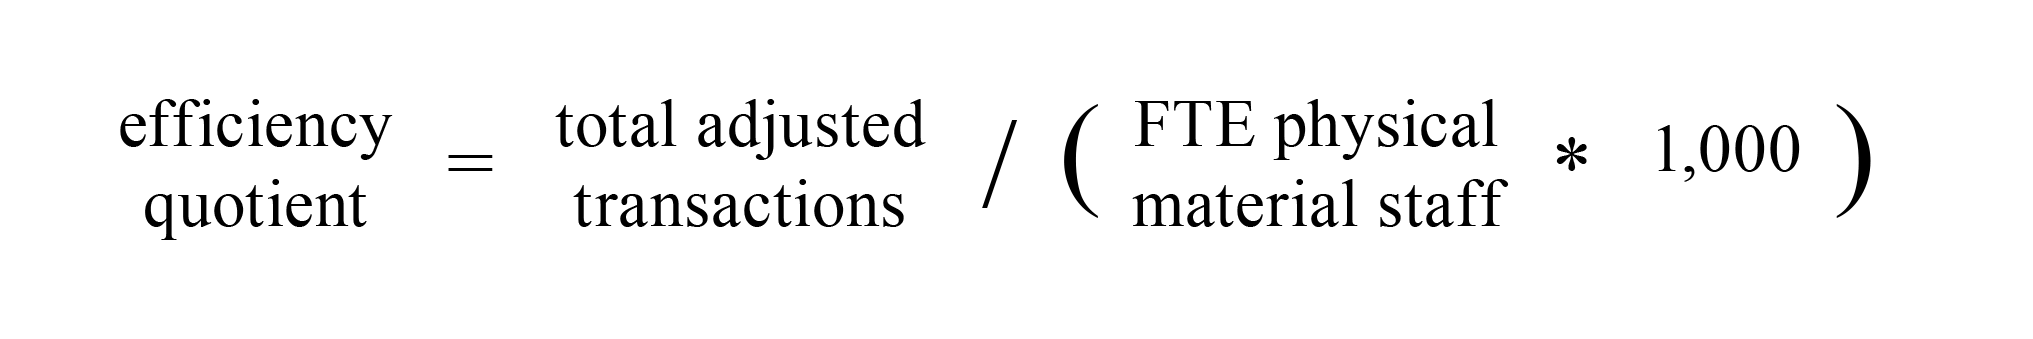 Figure 3. Efficiency quotient.